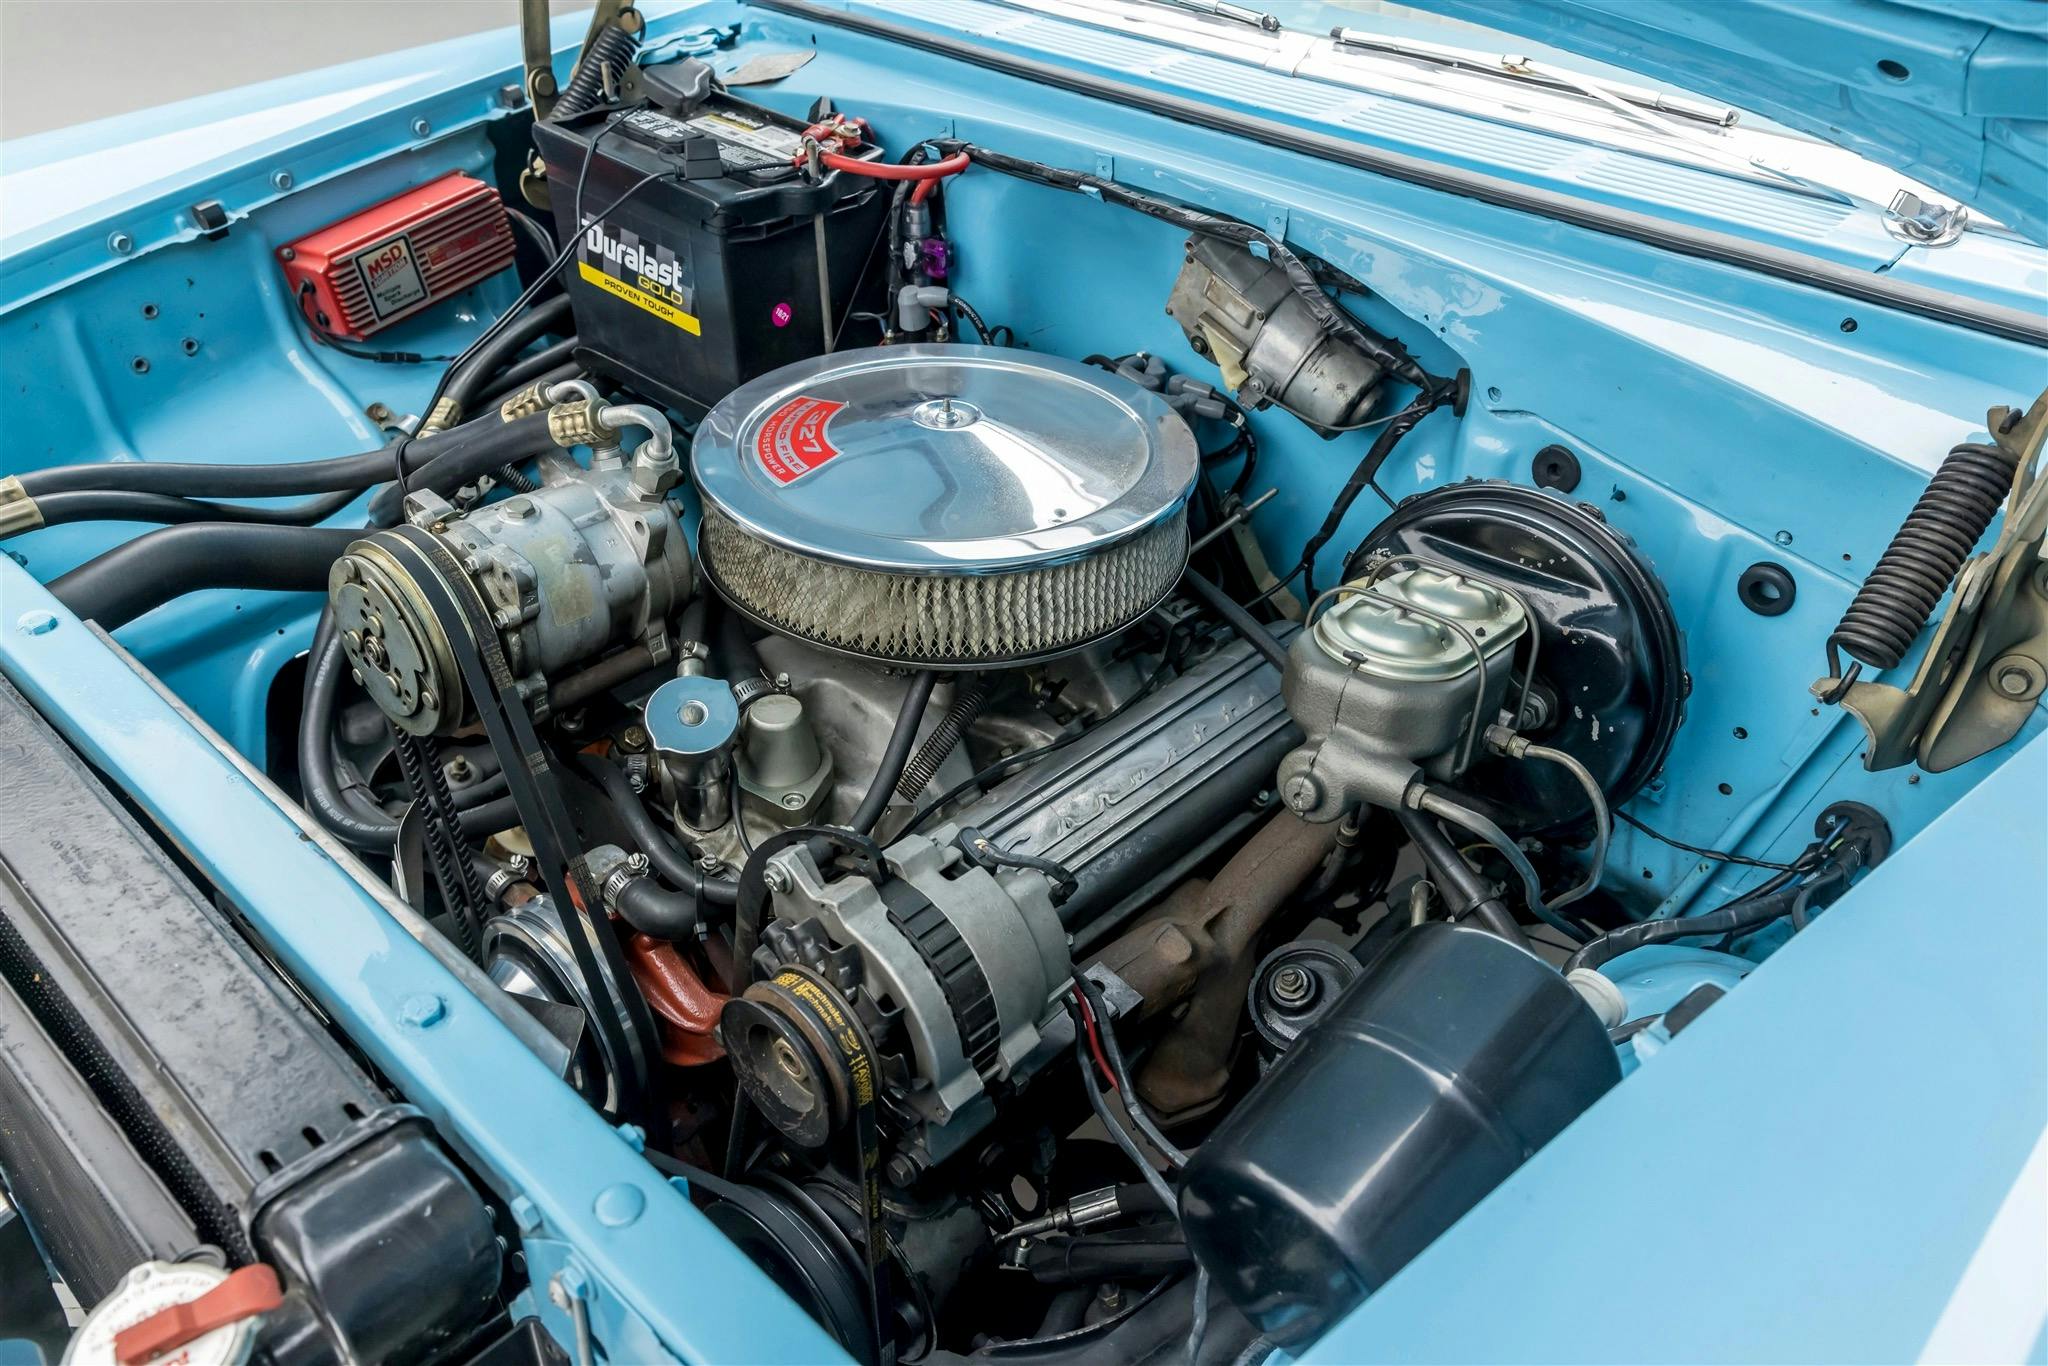 Bruce Willis 1955 Chevrolet Bel Air Nomad engine bay